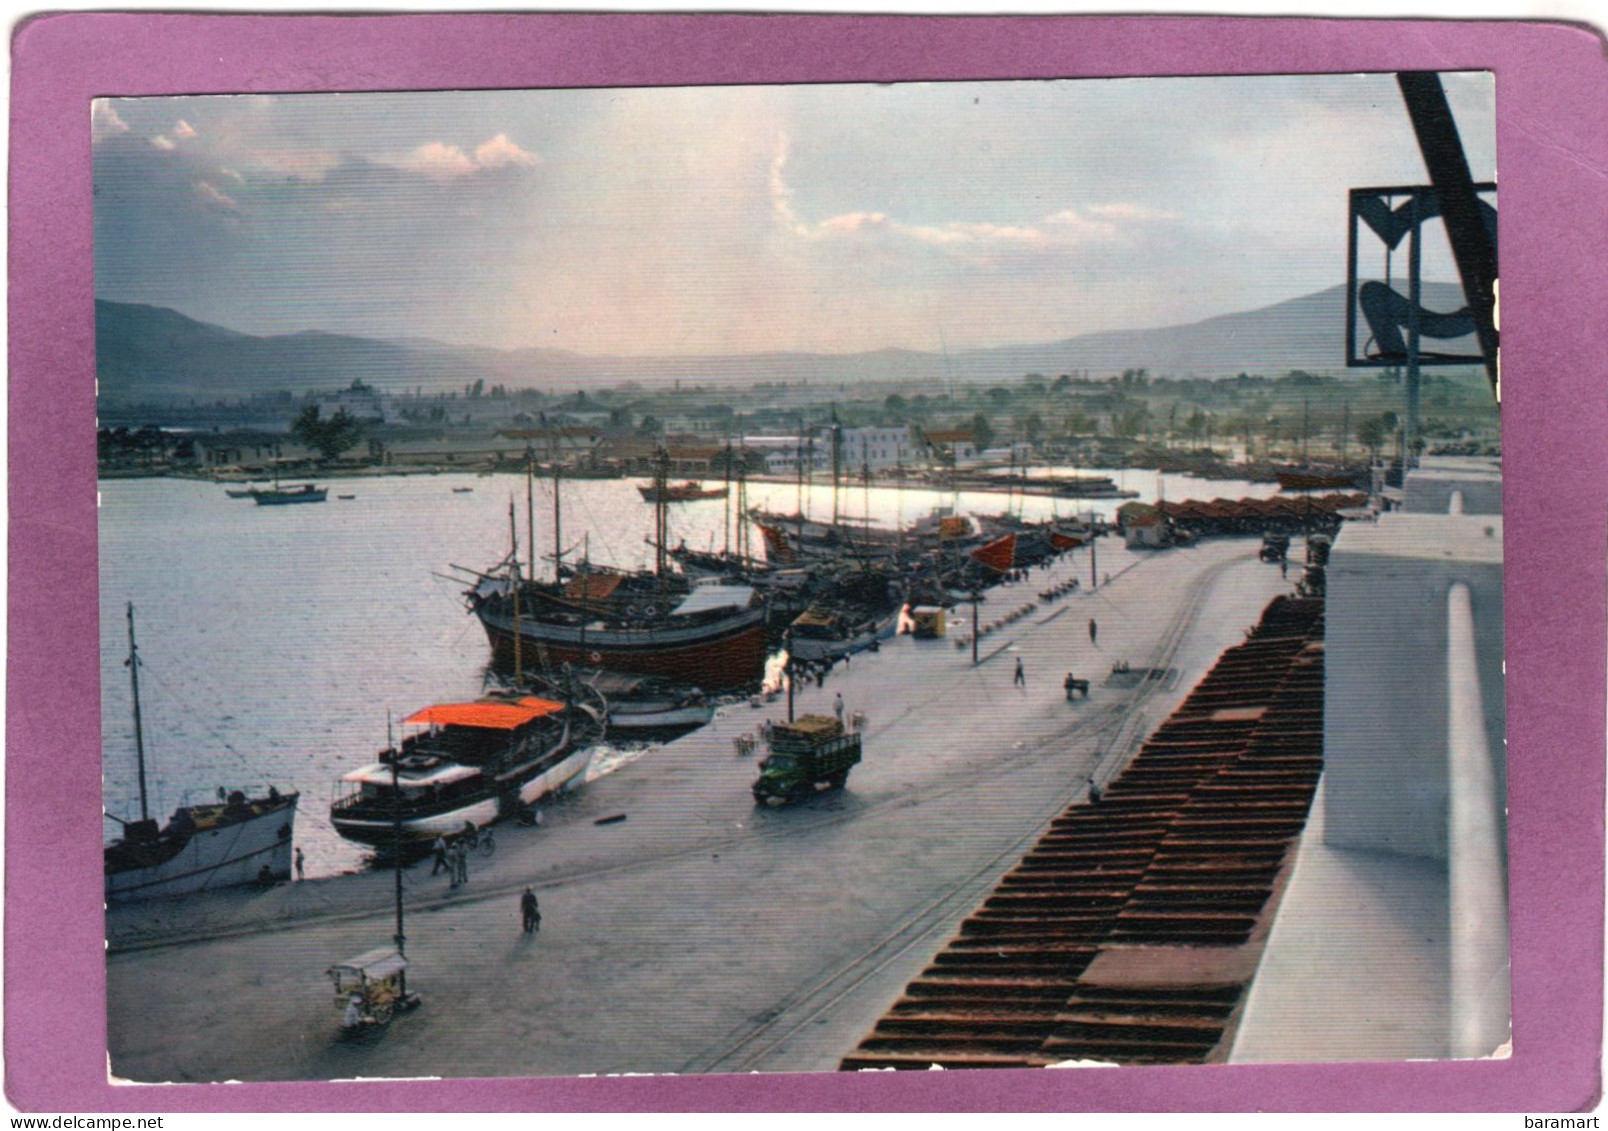 ΒΟΛΟΣ  'Aπό Τό λιμάνι  VOLOS Vue Du Port View Of The Harbour  Der Hafen - Griekenland